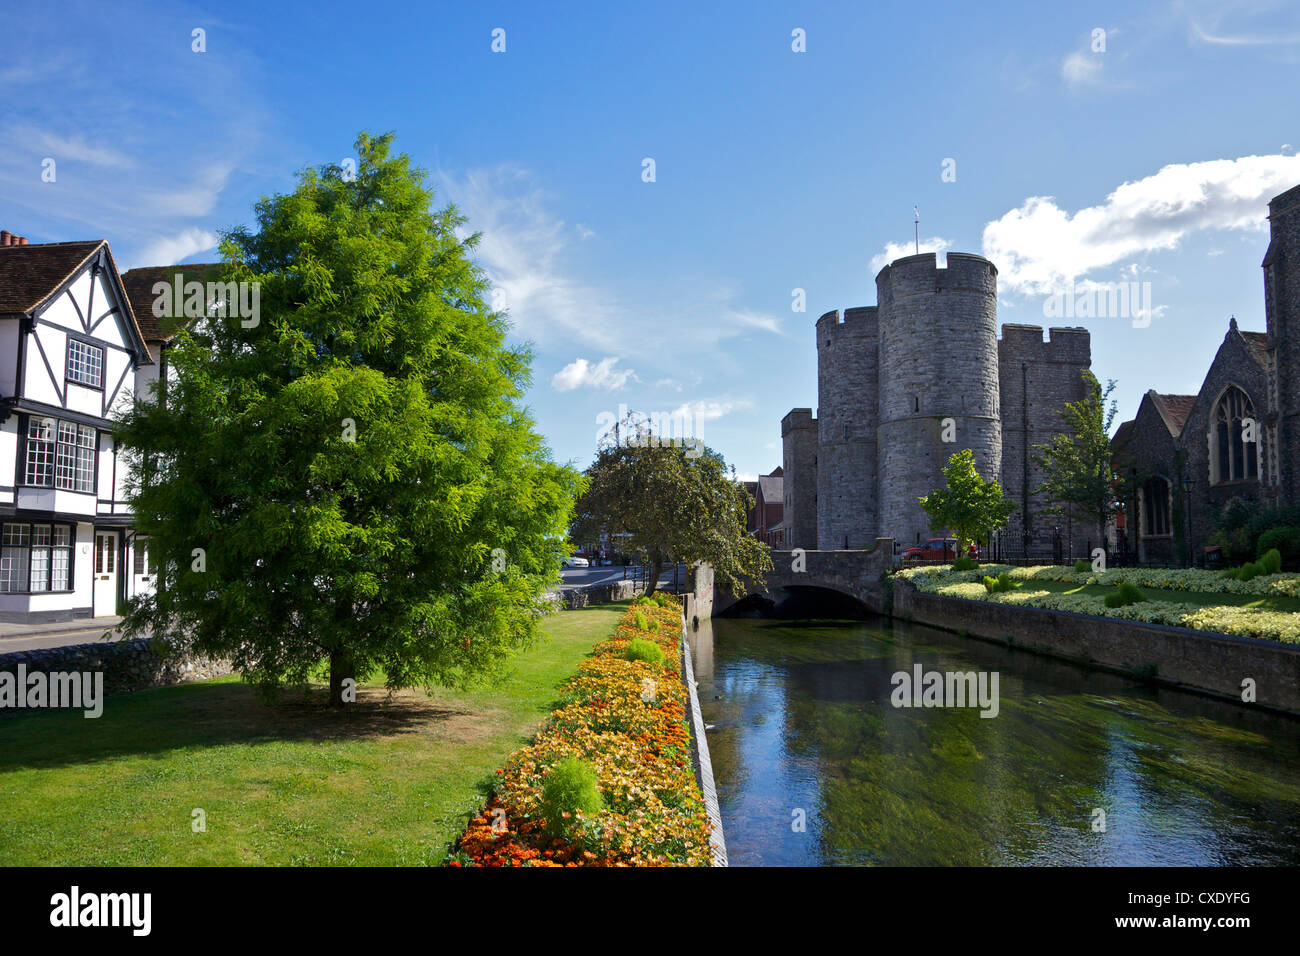 Le Westgate guérite médiévale et des jardins, avec le pont de la rivière Stour, Canterbury, Kent, Angleterre, Royaume-Uni, Europe Banque D'Images